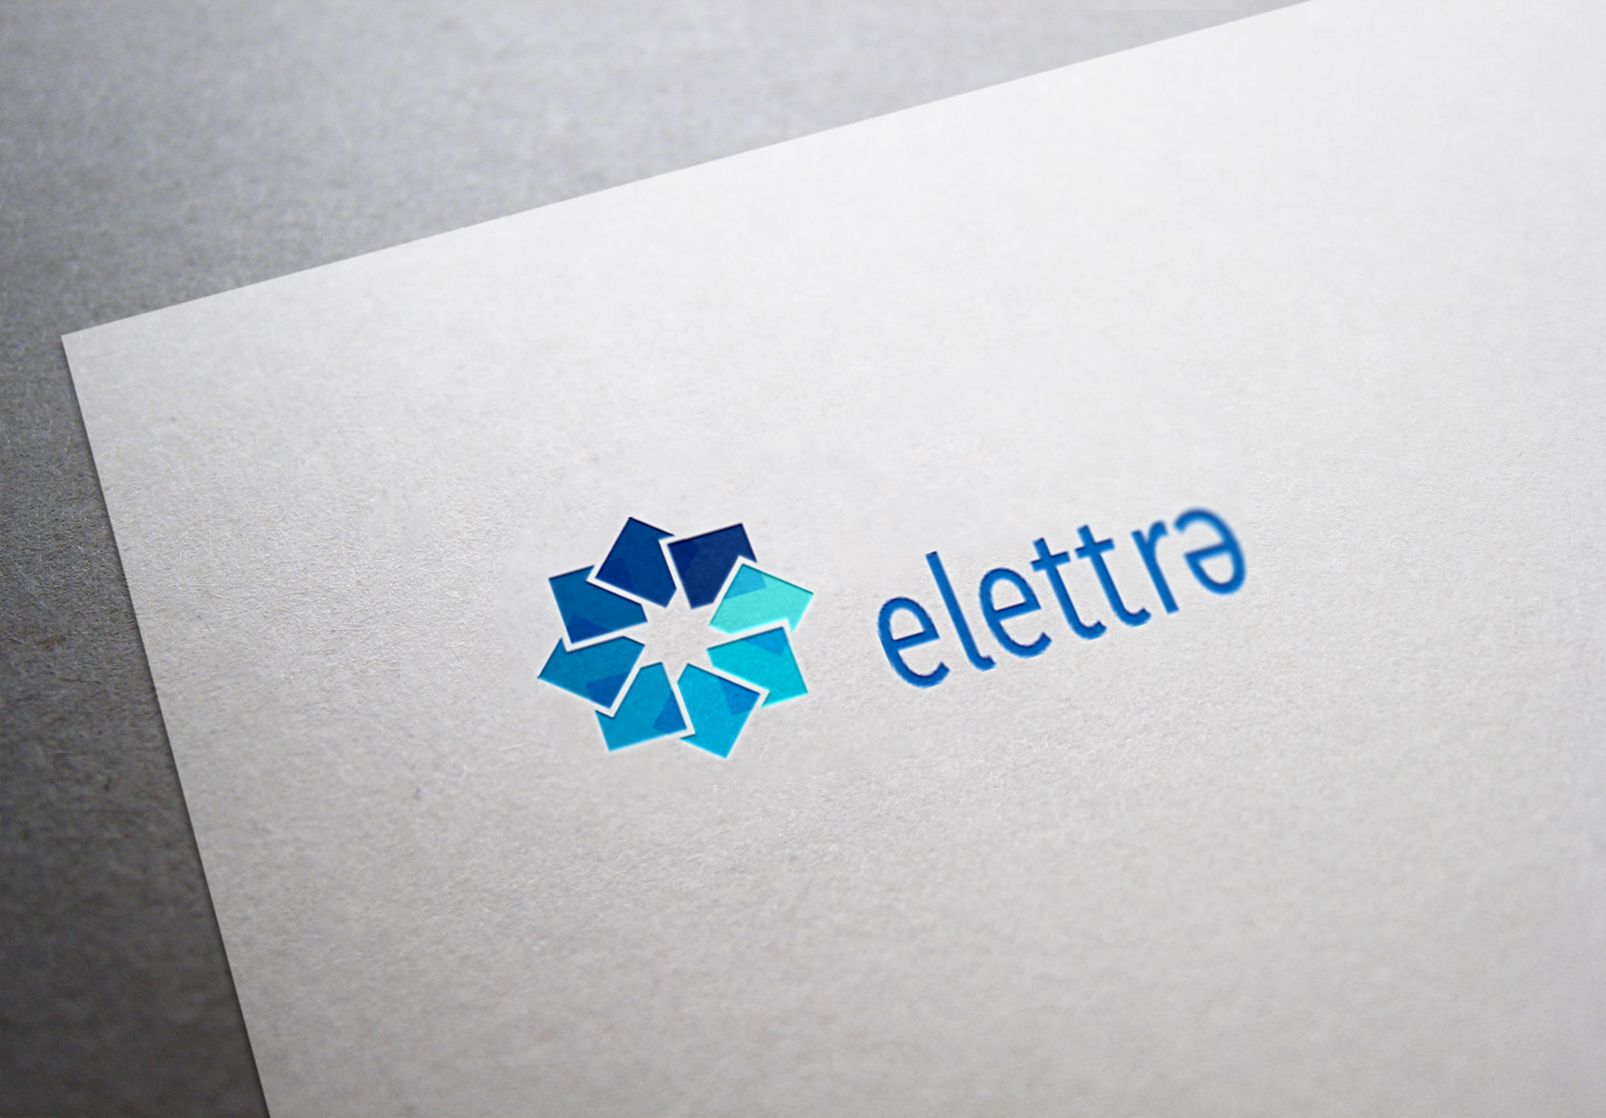 Логотип Elettra - стекольное производство - дизайнер dron55